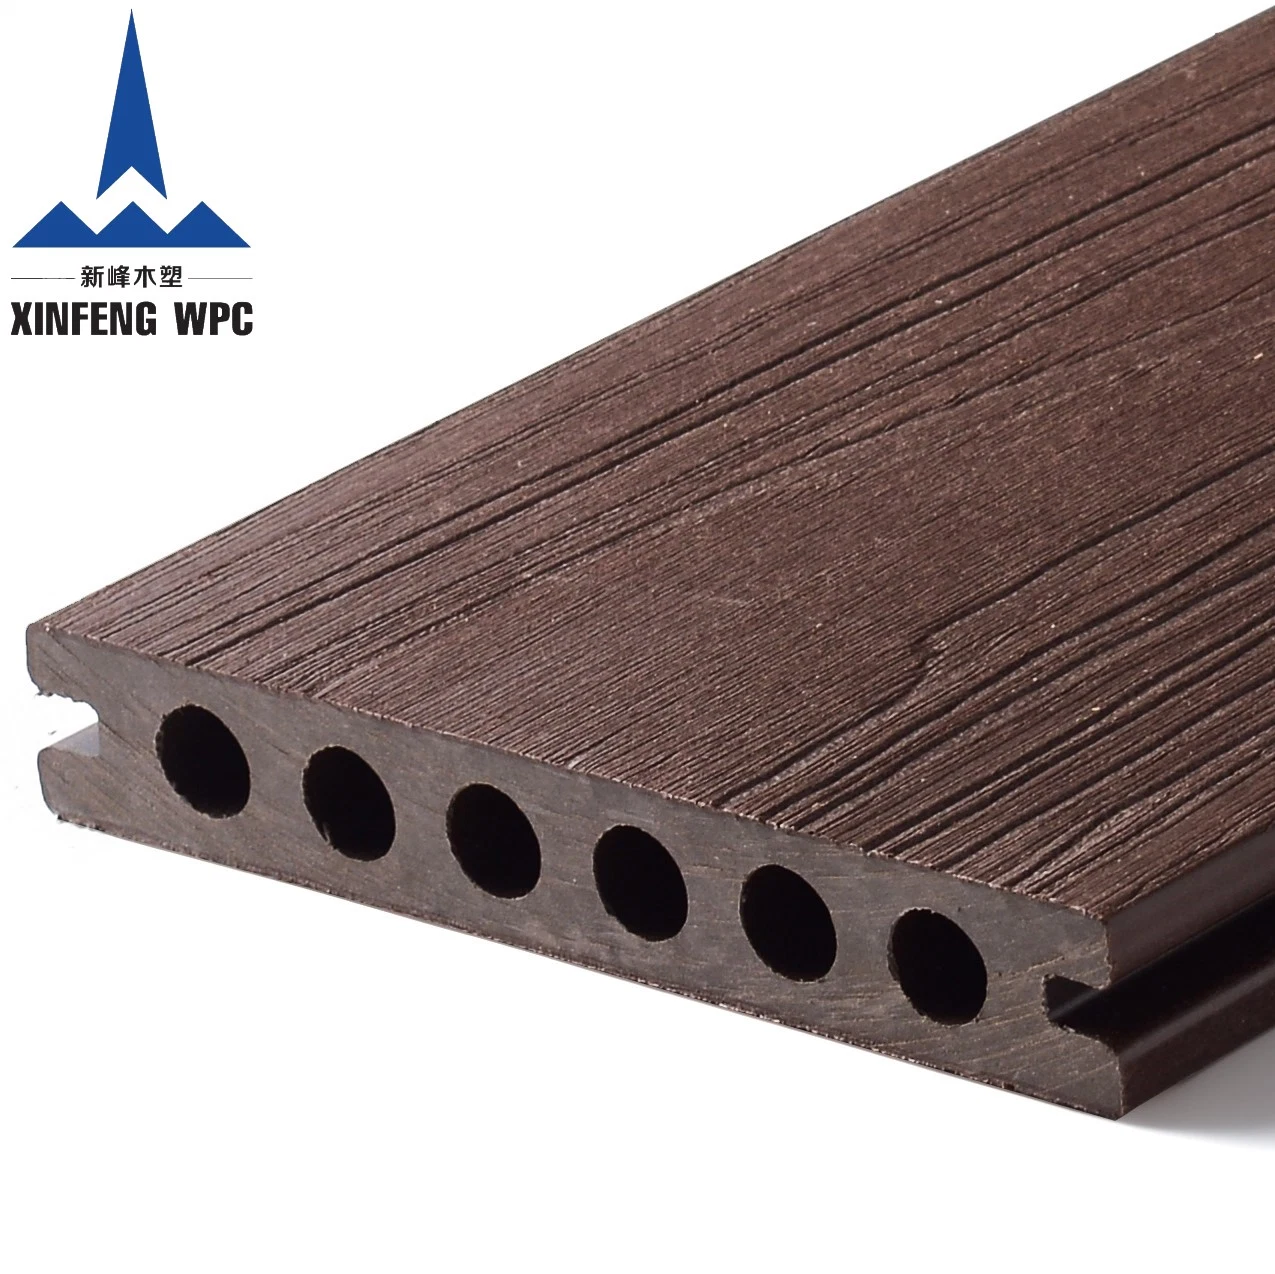 Hochwertige Co-Extrusion Holz Kunststoff Boden Decking WPC Bodenbelag